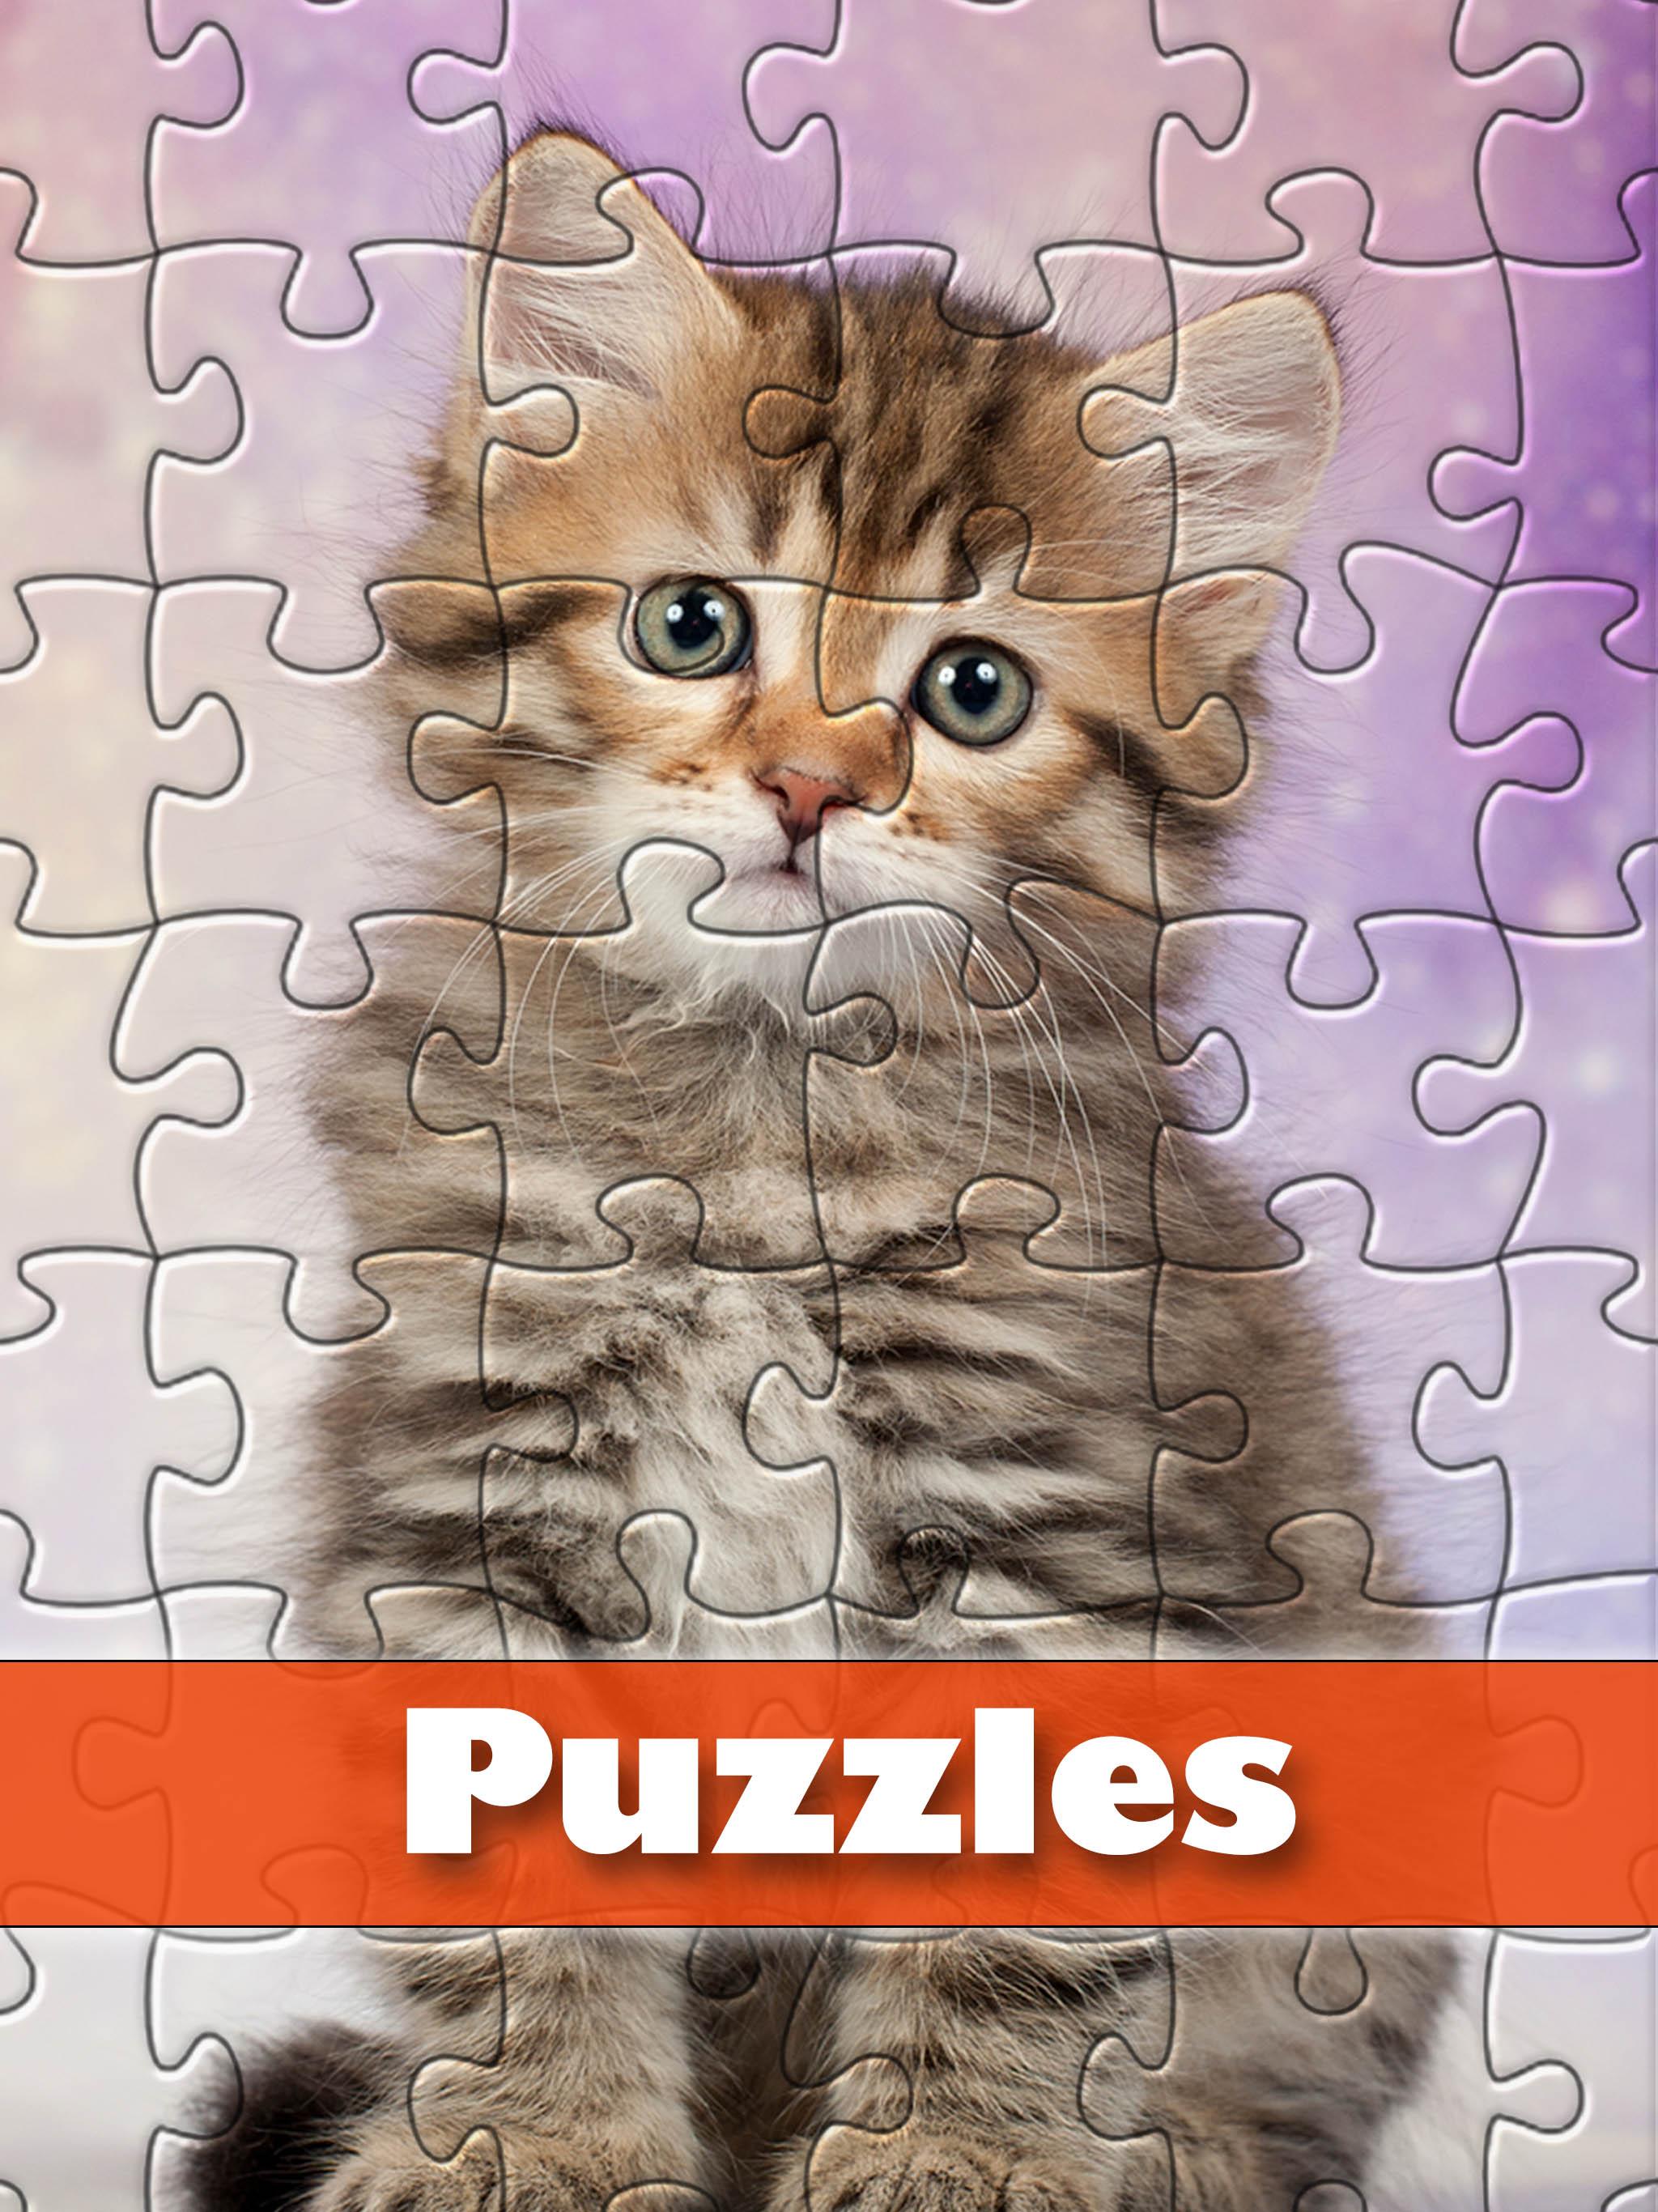 World of Puzzles - el juego de rompecabezas gratis for Android - APK  Download